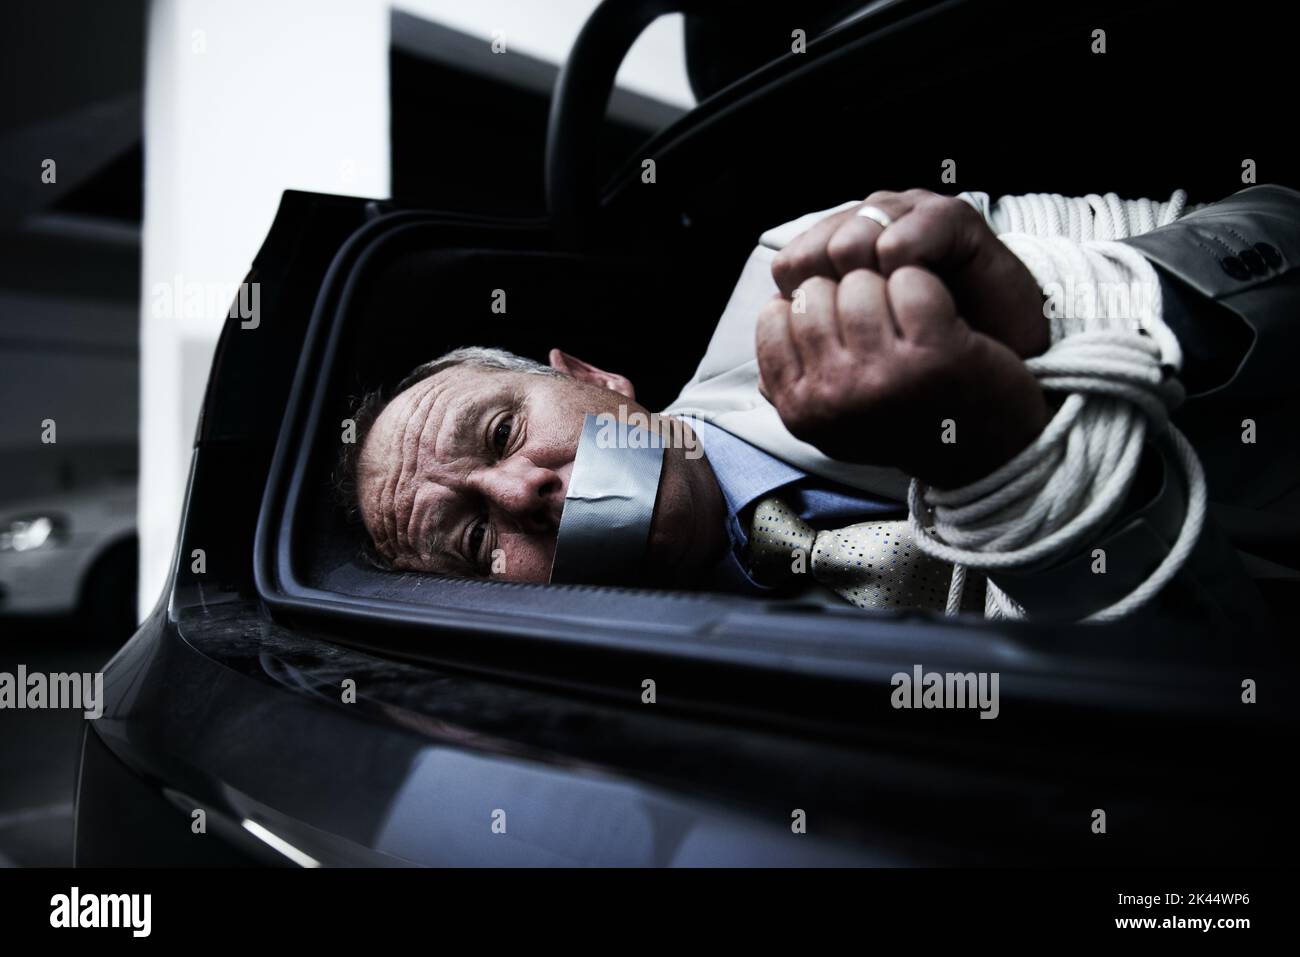 Gebunden und geknebelt. Ein verängstigter Geschäftsmann lag gebunden und geknebelt im Kofferraum seines Autos. Stockfoto